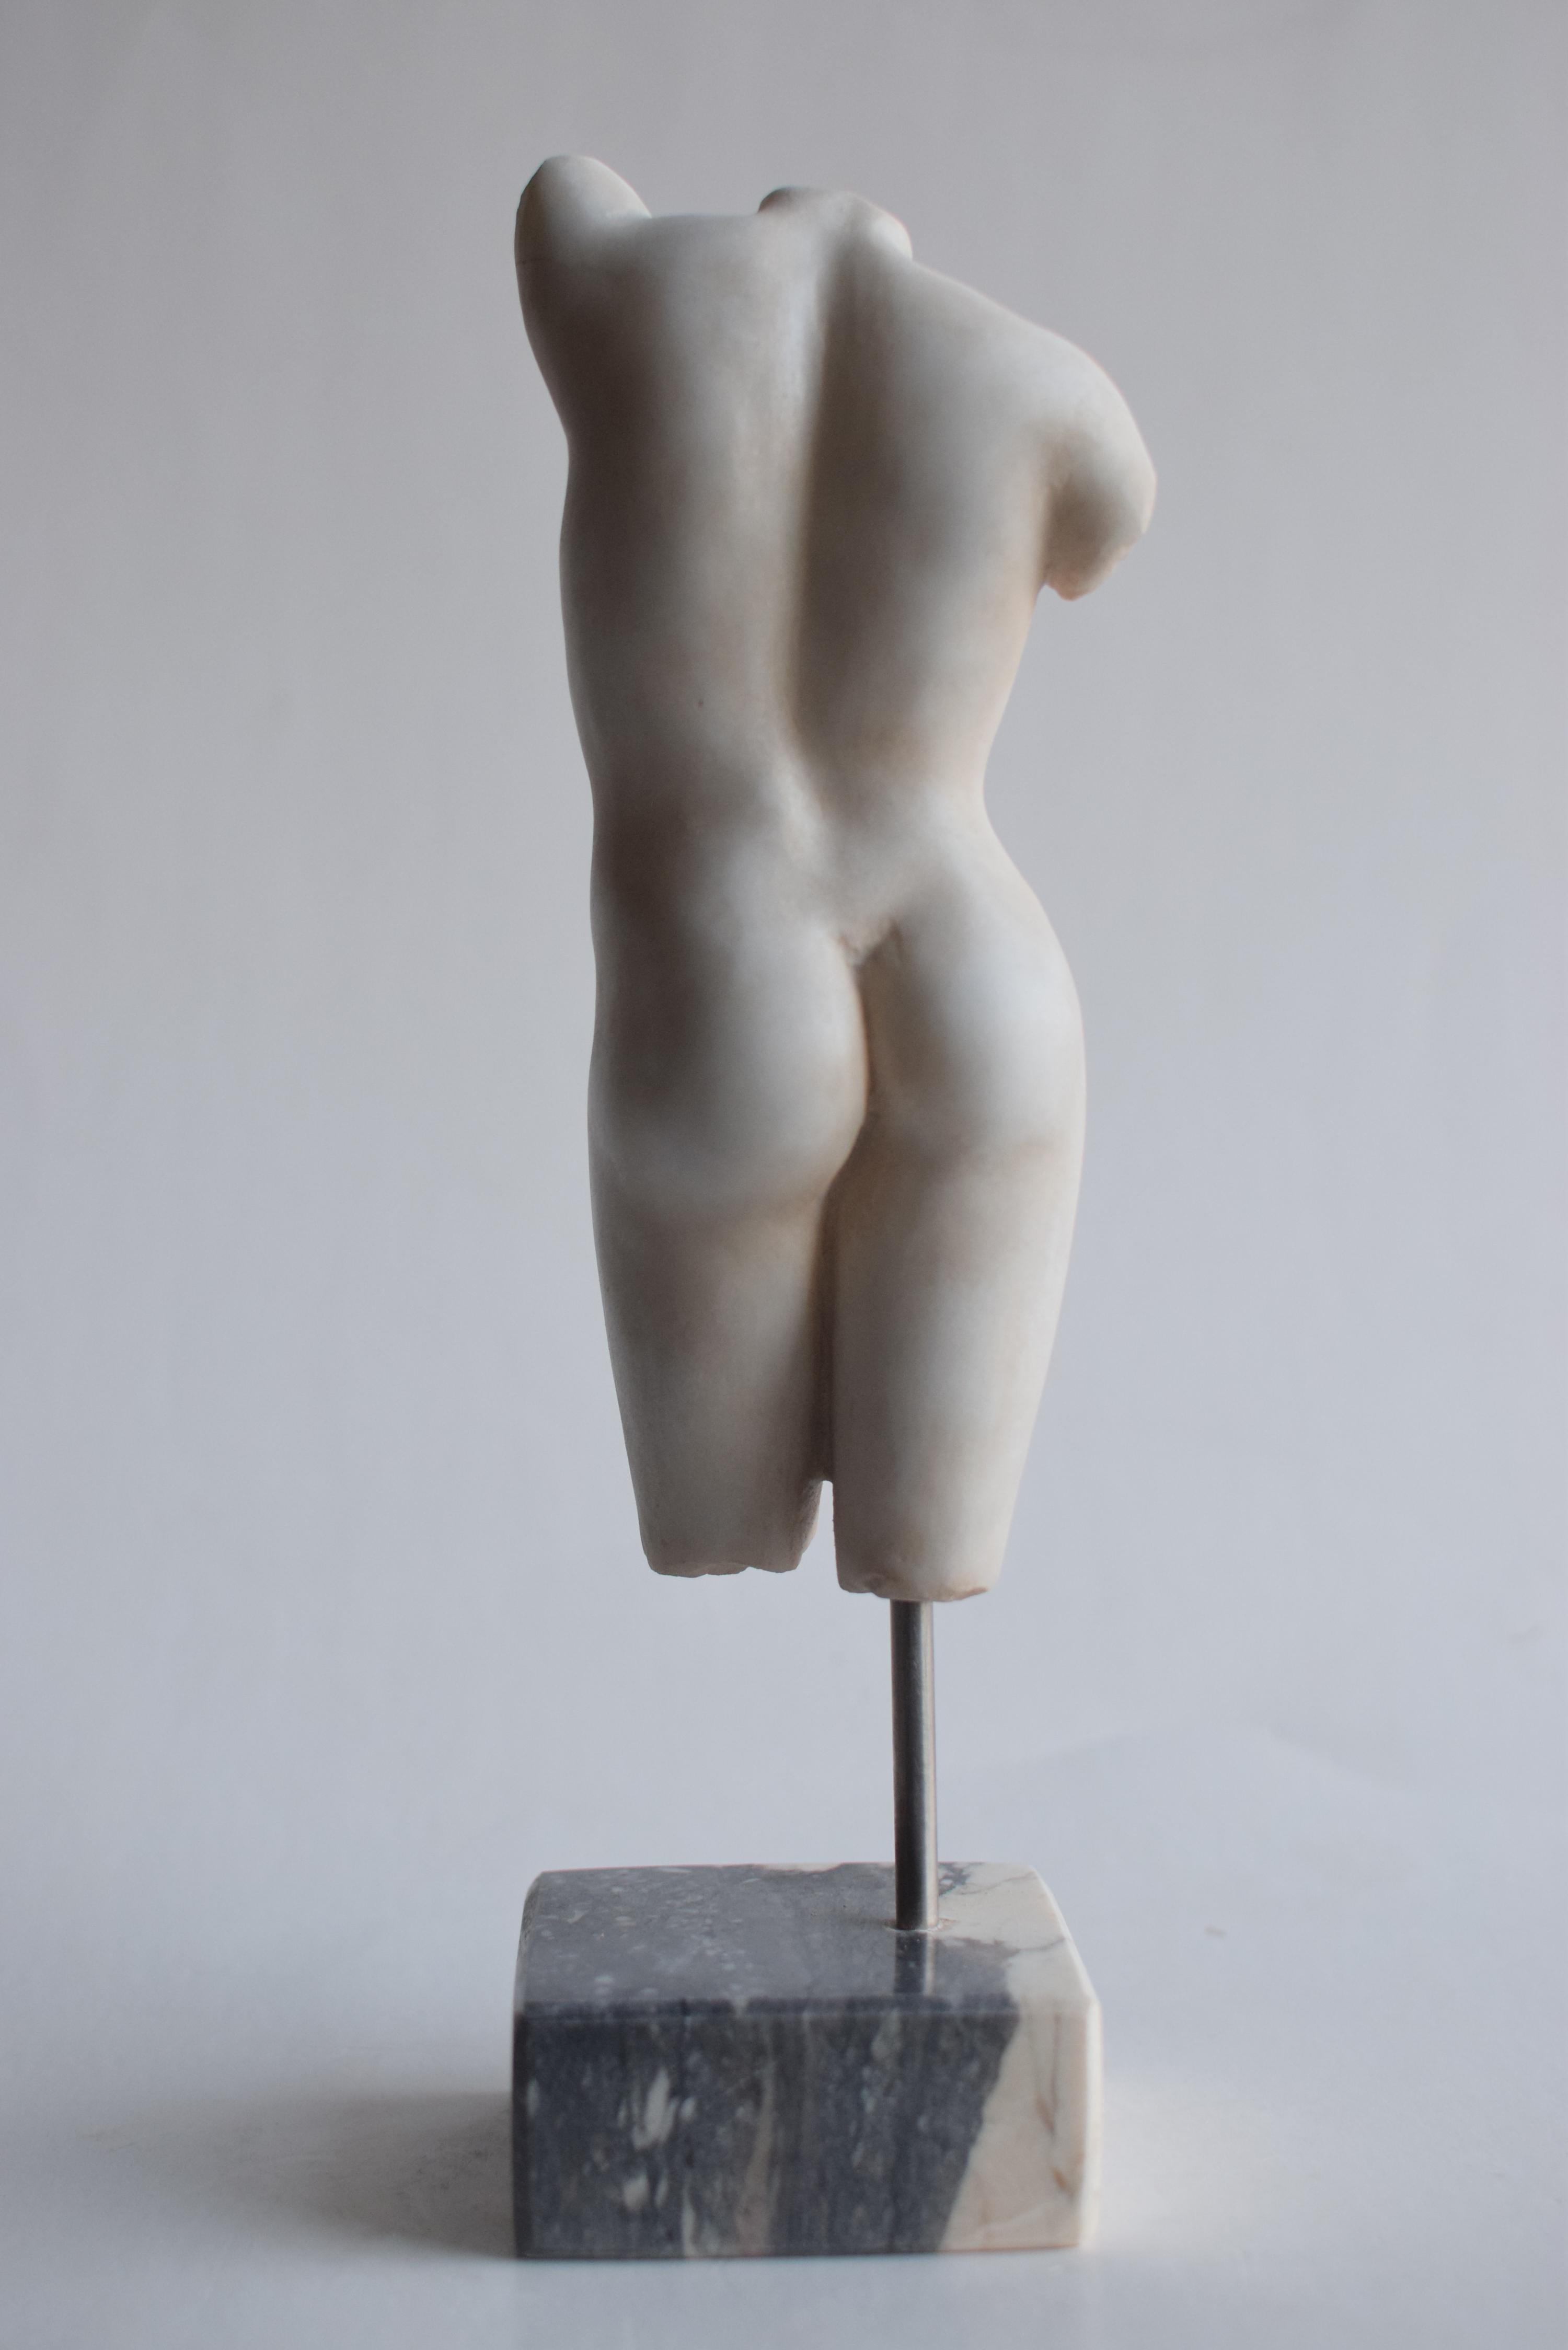 Hand-Crafted Torso femminile scolpito su marmo bianco Carrara - miniatura -made in Italy For Sale